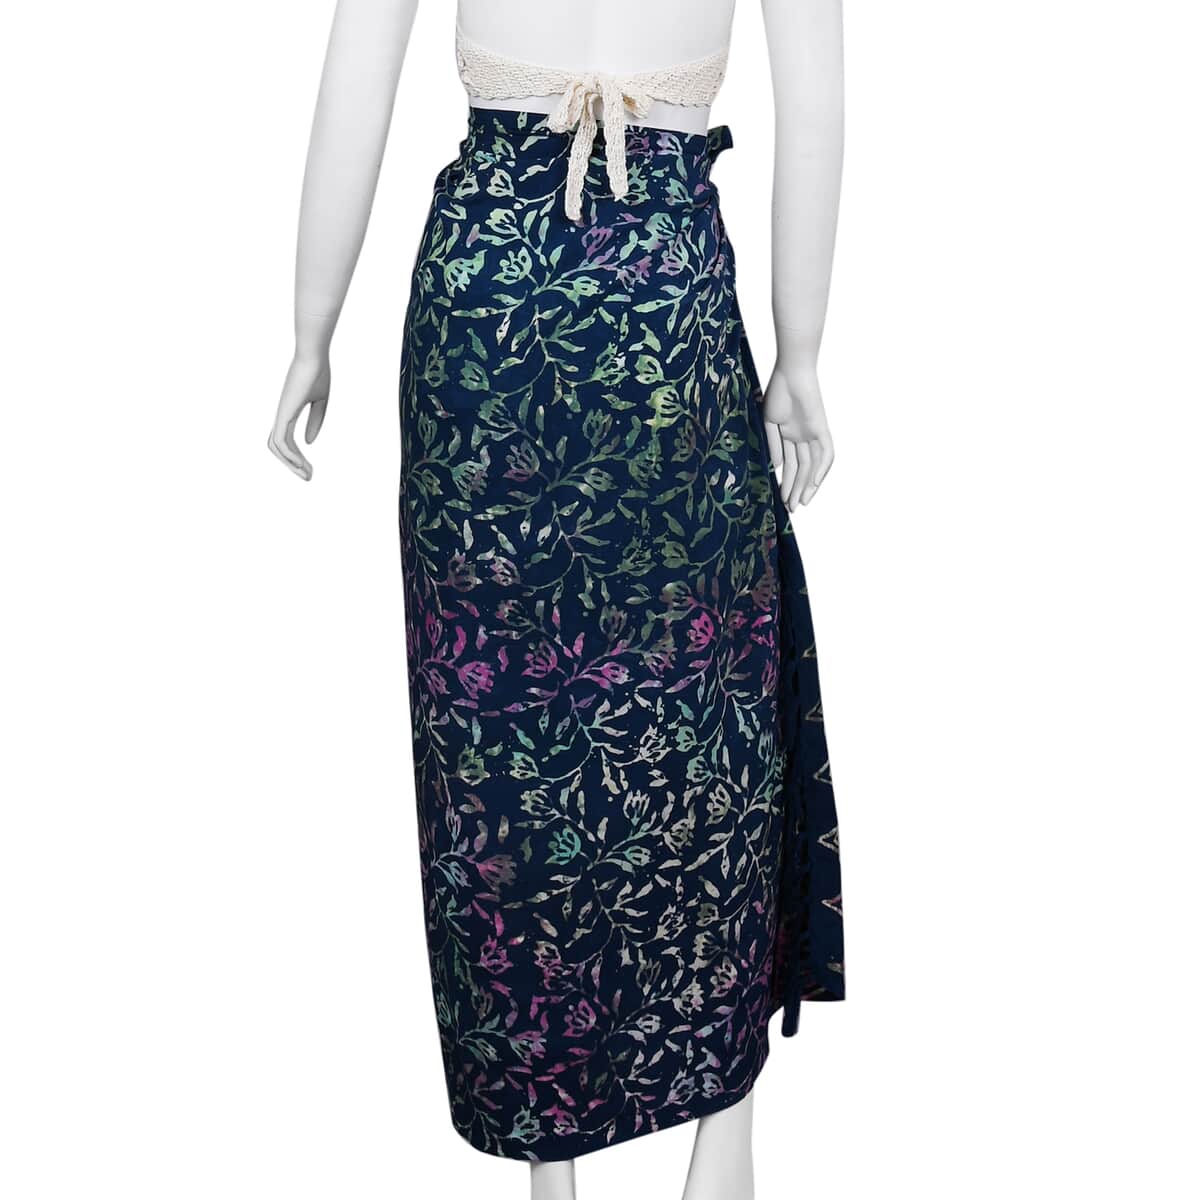 Handmade Dark Grey Floral Motif Pattern 100% Rayon Sarong | Women's Saron Wrap | Sarong Skirt | Beach Sarong Cover Up image number 2